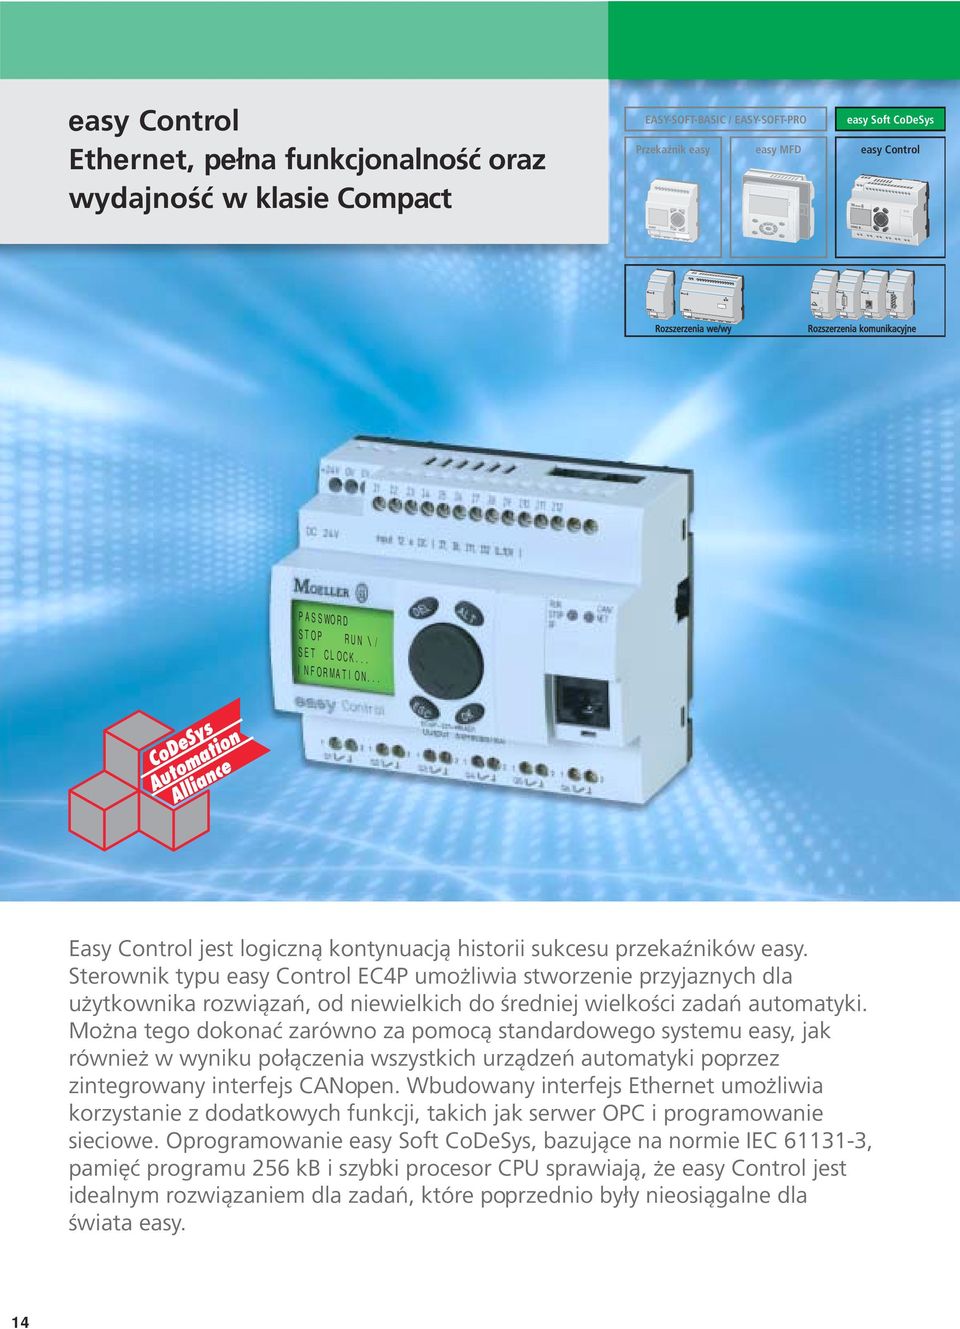 Sterownik typu easy Control EC4P umożliwia stworzenie przyjaznych dla użytkownika rozwiązań, od niewielkich do średniej wielkości zadań automatyki.